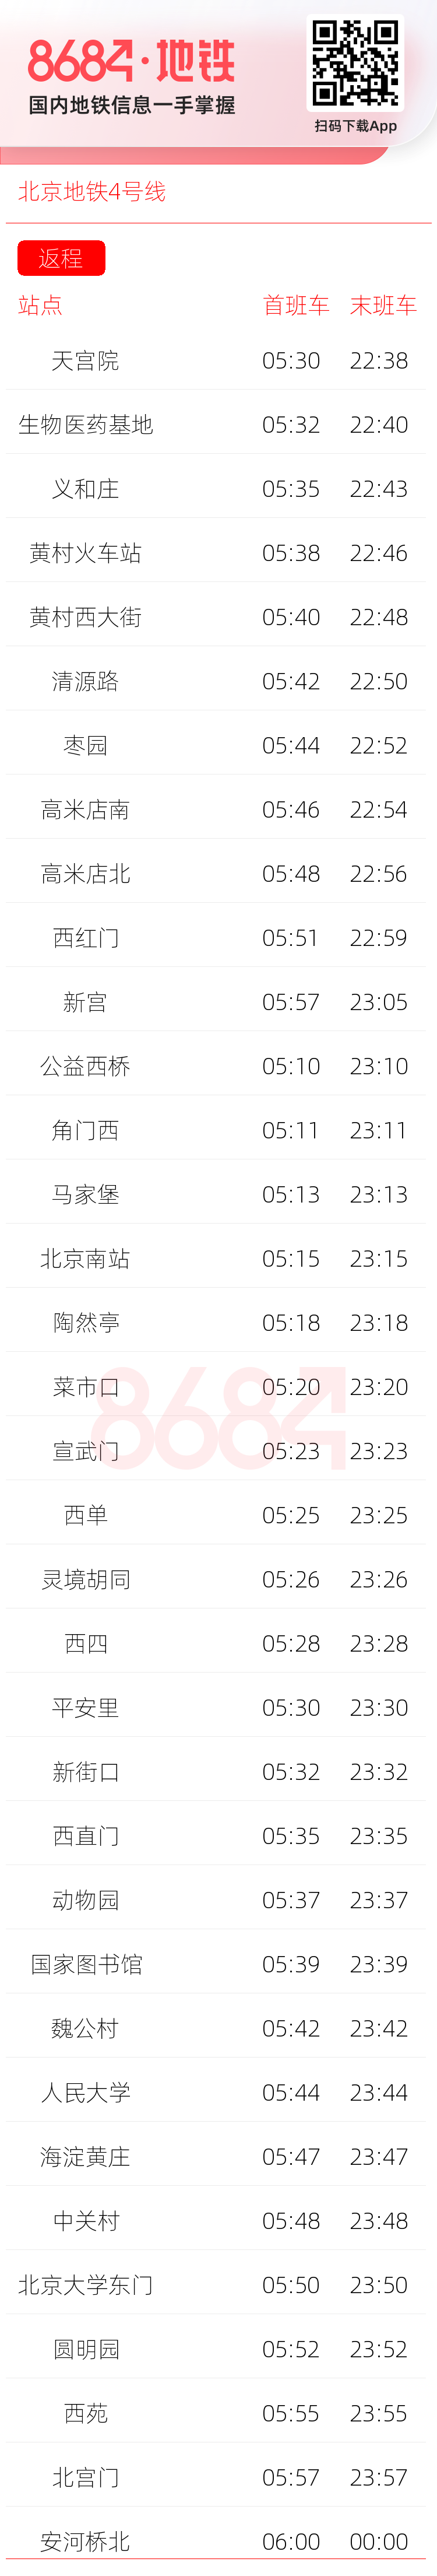 北京地铁4号线运营时间表